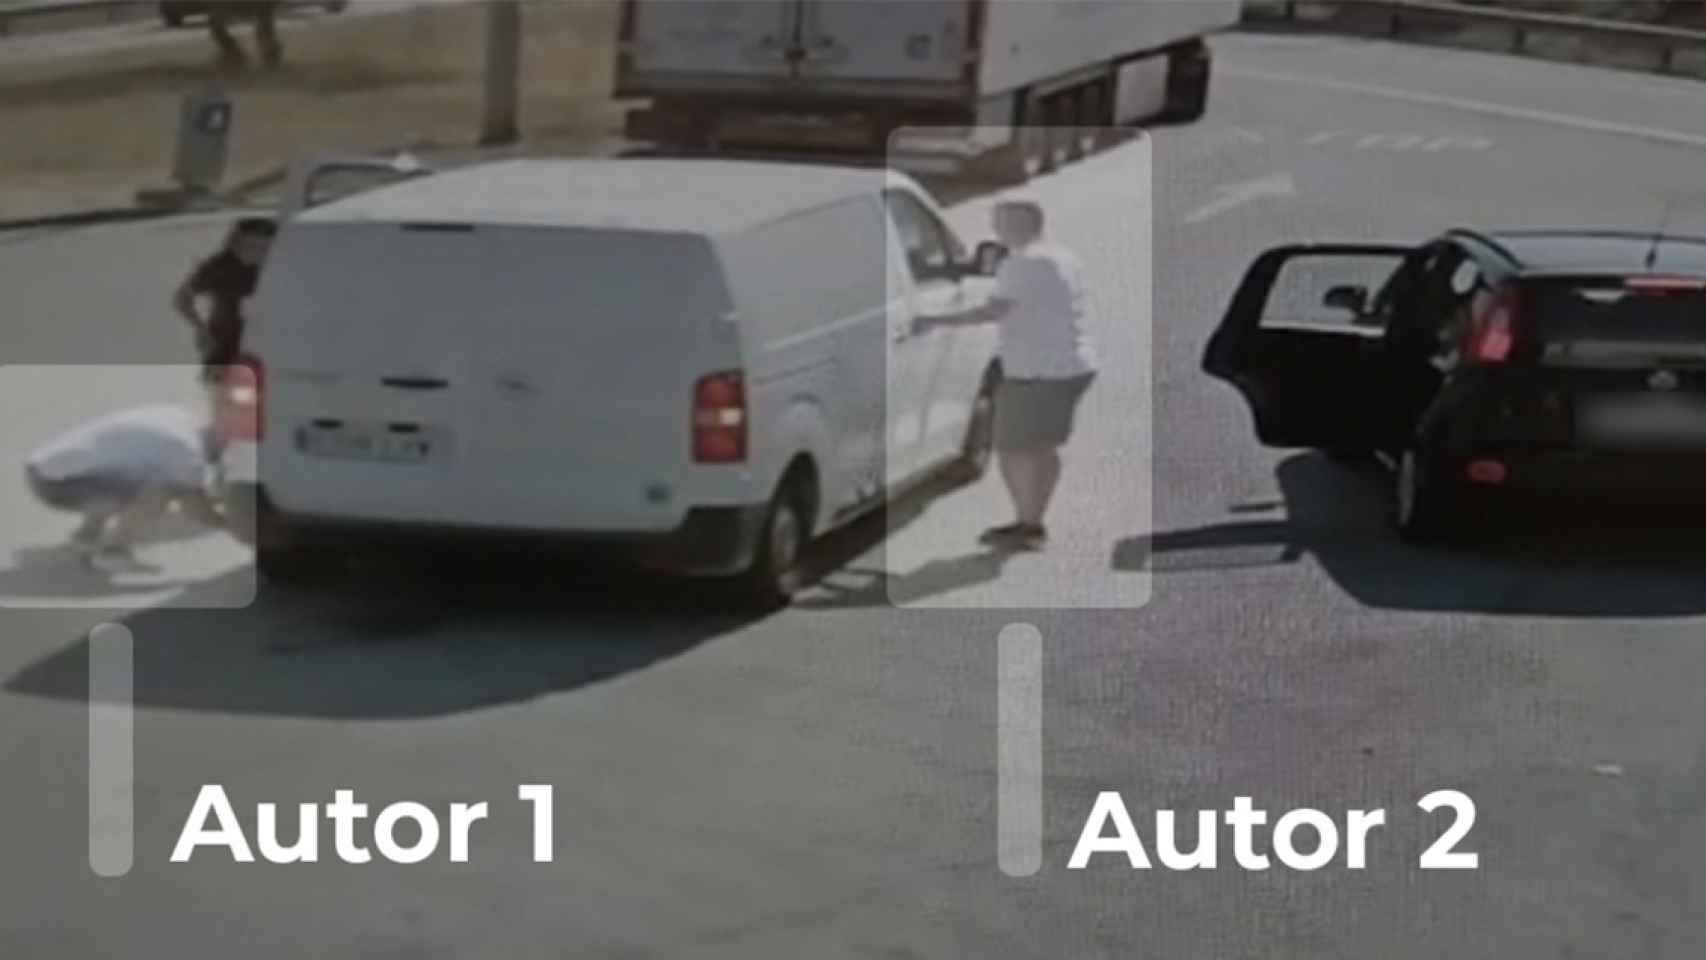 Uno de los ladrones ayuda a la víctima con un pinchazo mientras su compañero desvalija el coche / MOSSOS